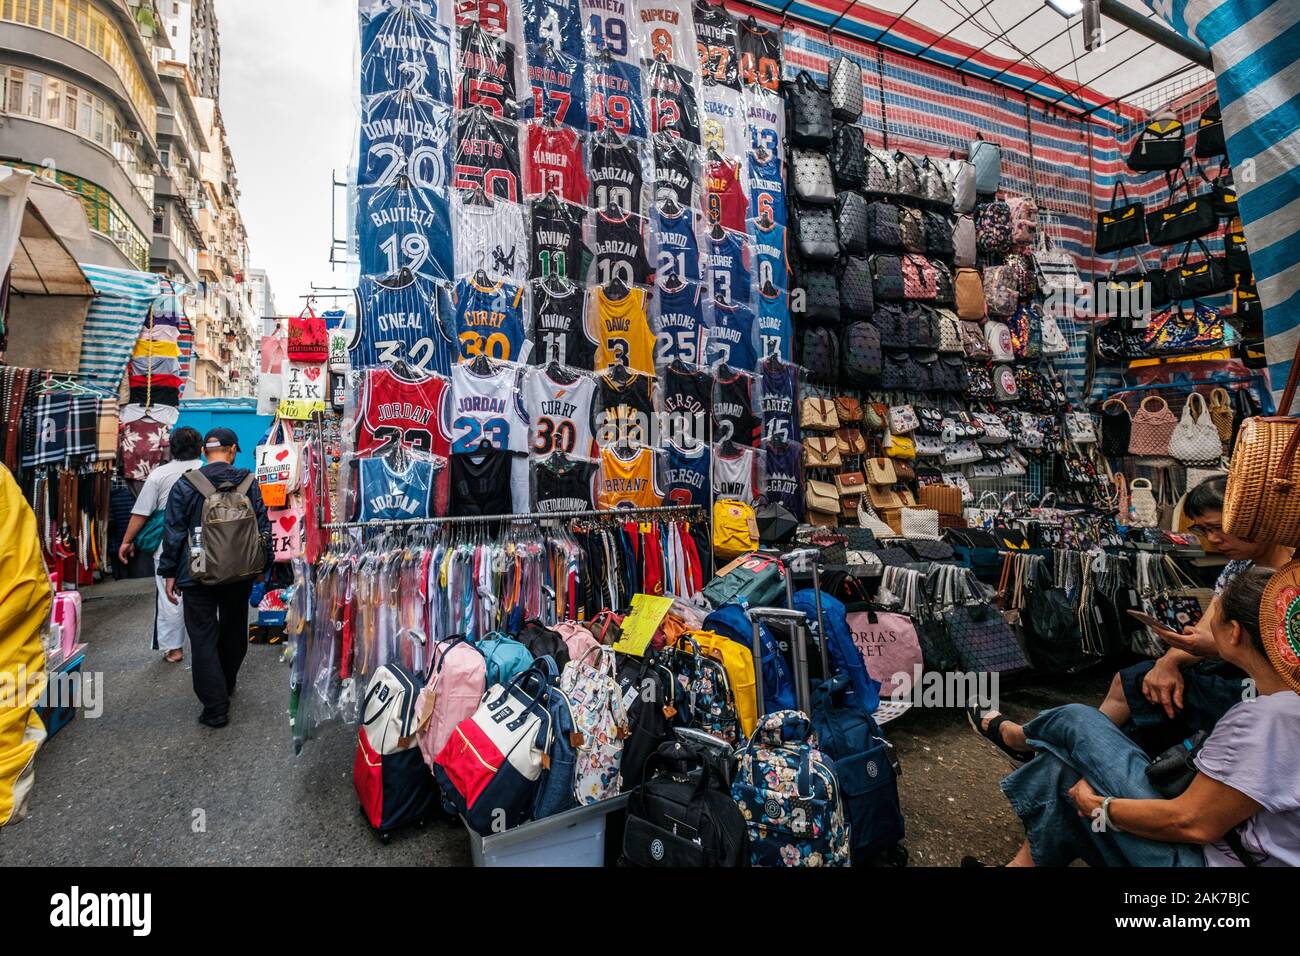 HongKong, China - November, 2019: Mode, Kleidung und Merchandise auf Street Market (Markt) Ladie's in Hongkong, Tung Choi Street Stockfoto